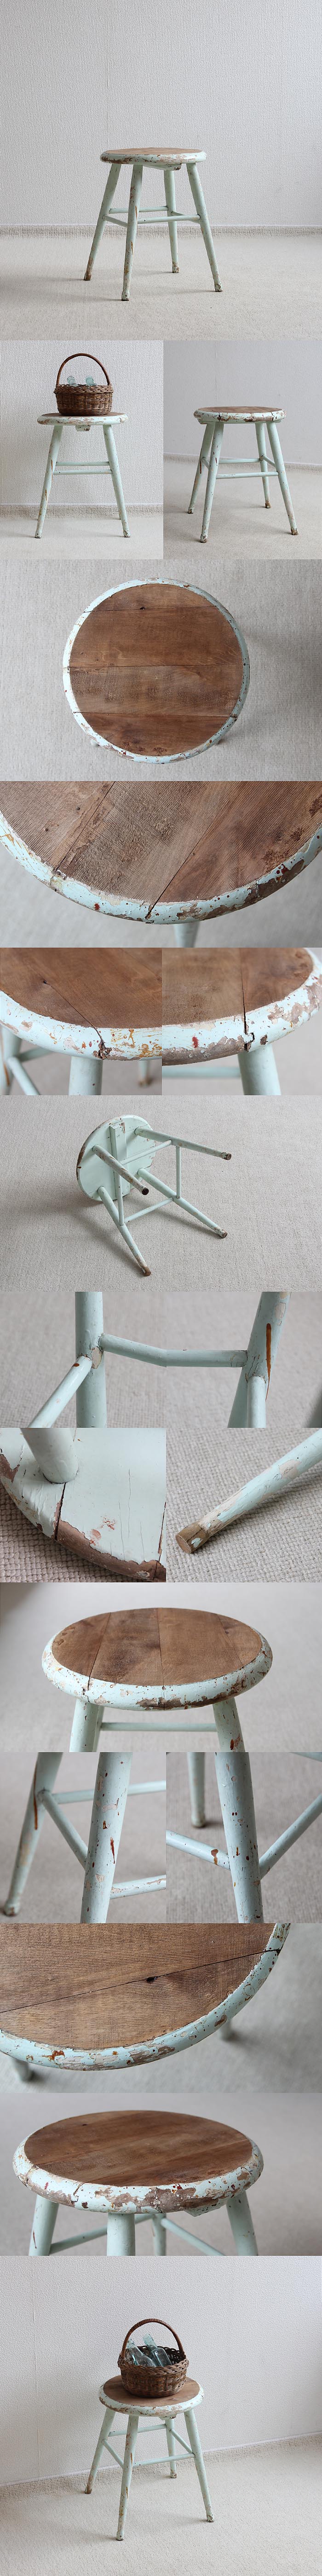 イギリス アンティーク ペイントスツール 木製 丸椅子 古木 英国 家具「シャビーシック」V-462